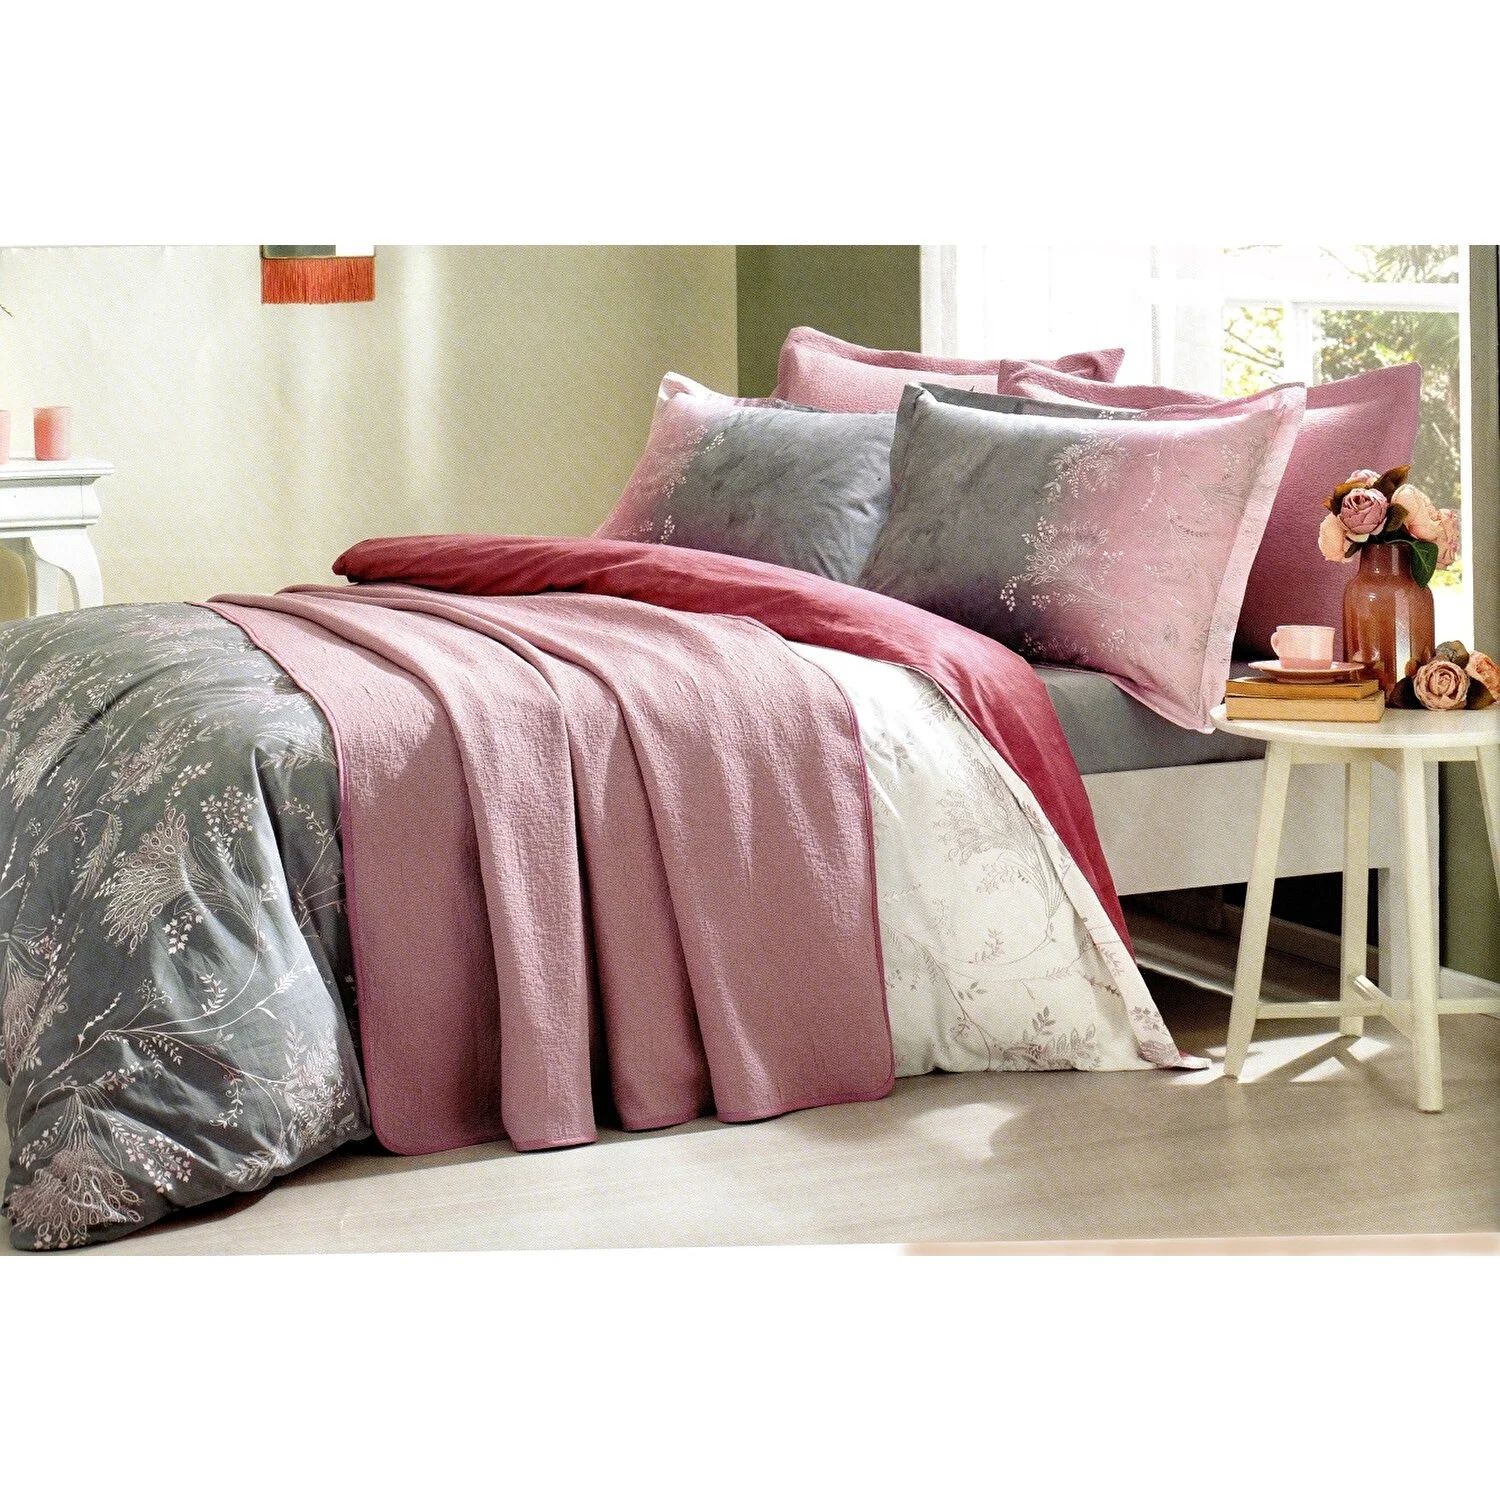 Комплект постельного белья Ozdilek Ditsy Фиолетовый комплект покрывала и пододеяльника для двуспальной кровати smuta mor смута мор 1 cd